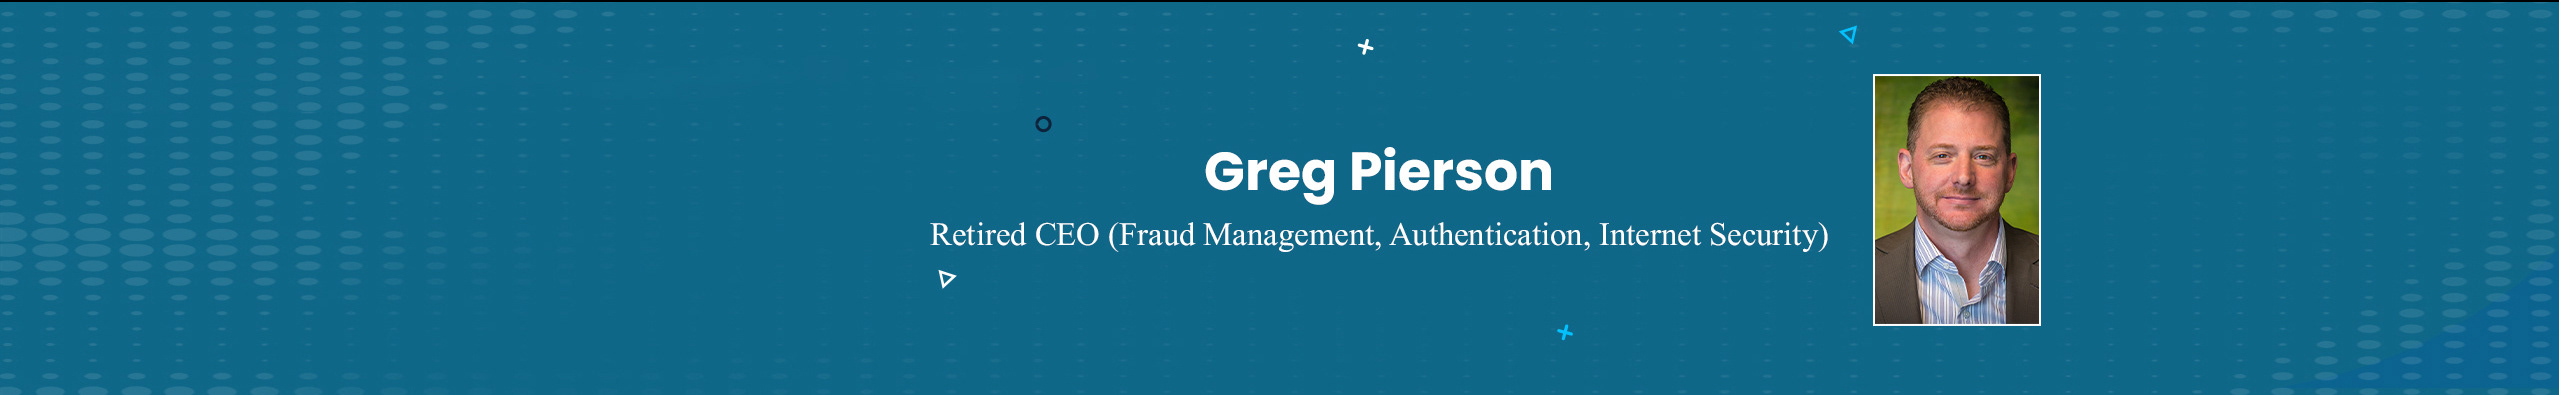 Profil-Banner von Greg Pierson